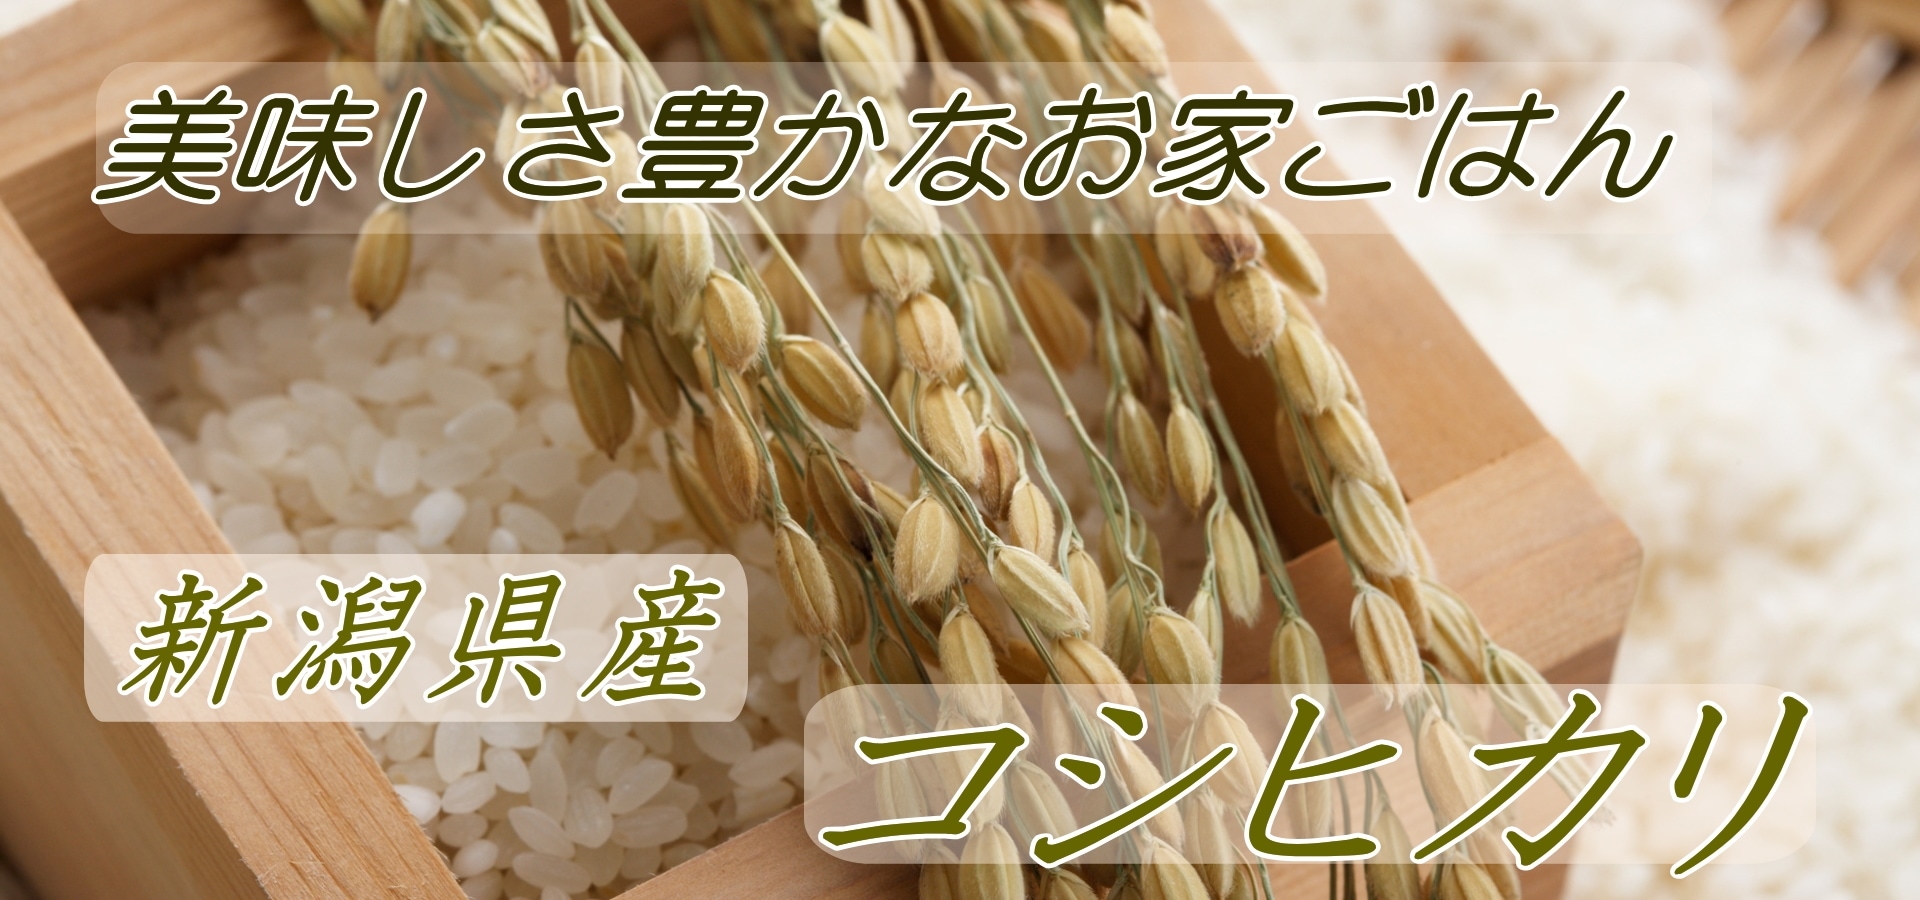 新潟県産コシヒカリ白米